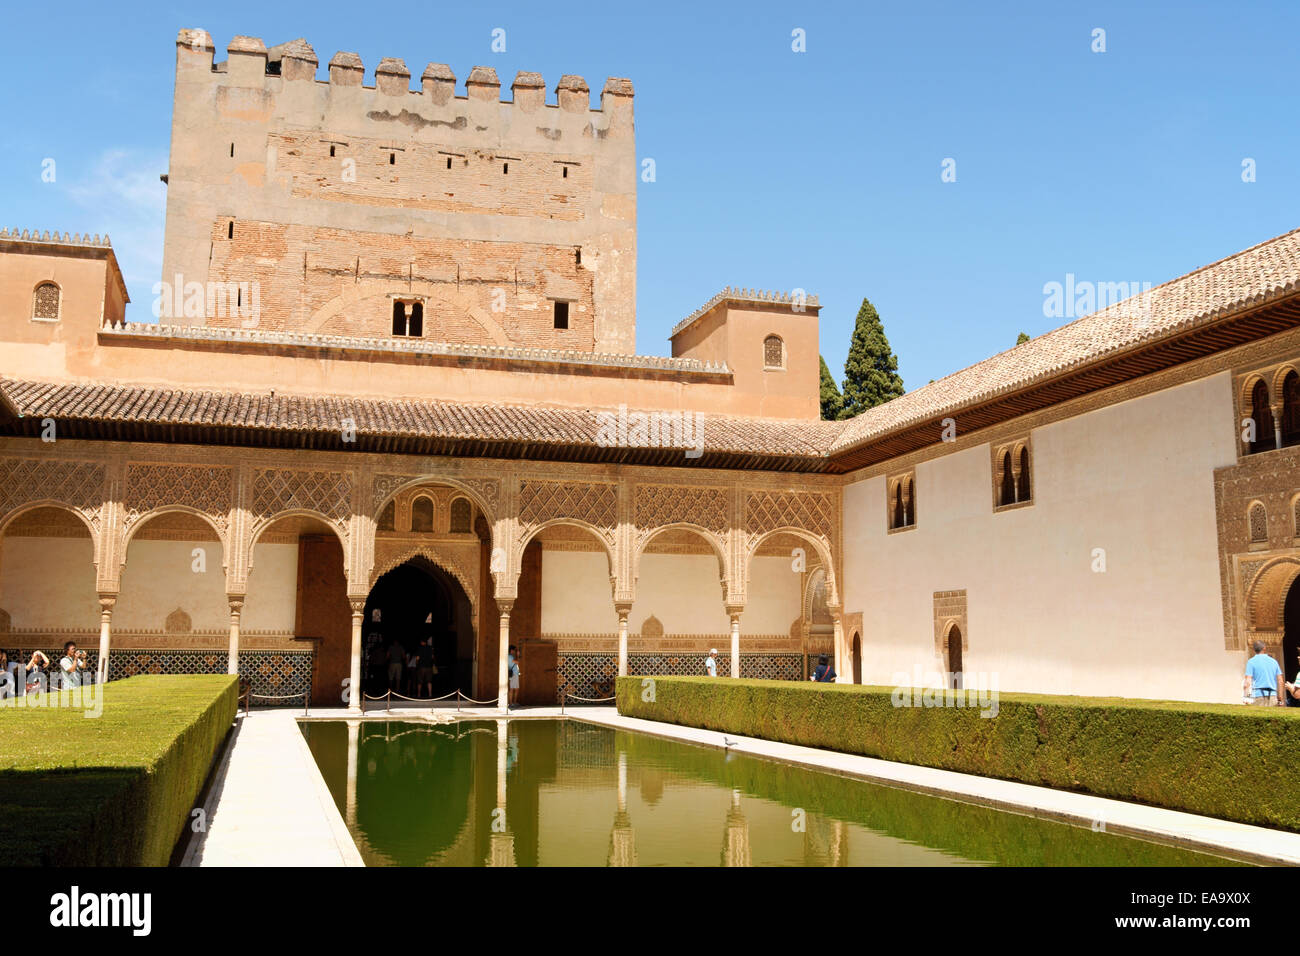 Granada, Espagne - 14 août 2011 : Détail de la Tour de Comares et la Cour des Myrtes ou cour de la bénédiction dans l'Alhambra. Banque D'Images